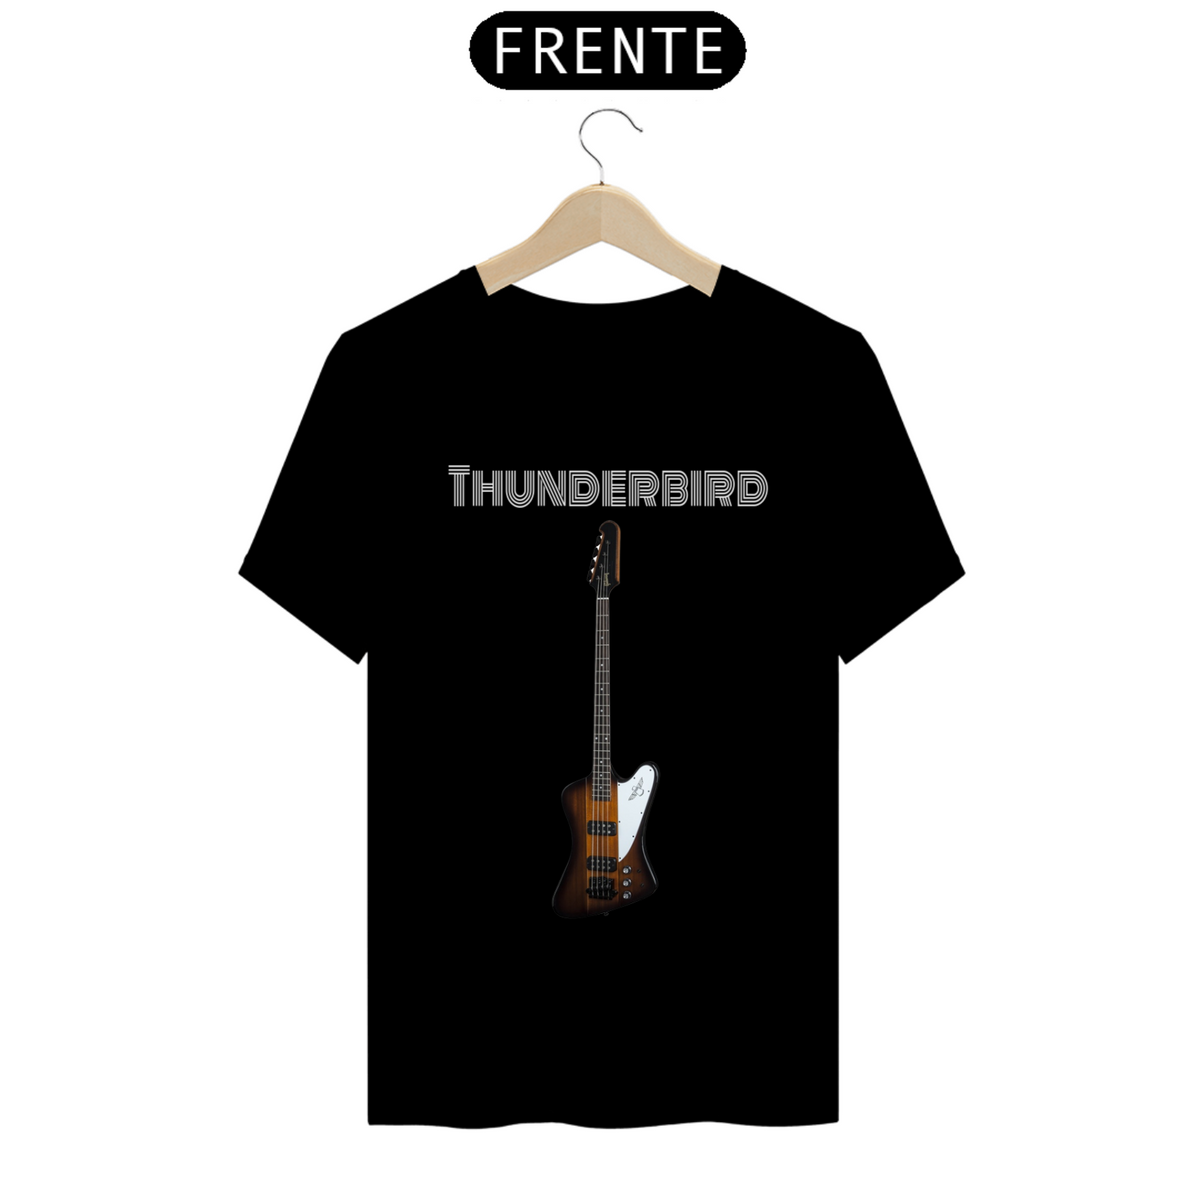 Nome do produto: Gibson Thunderbird